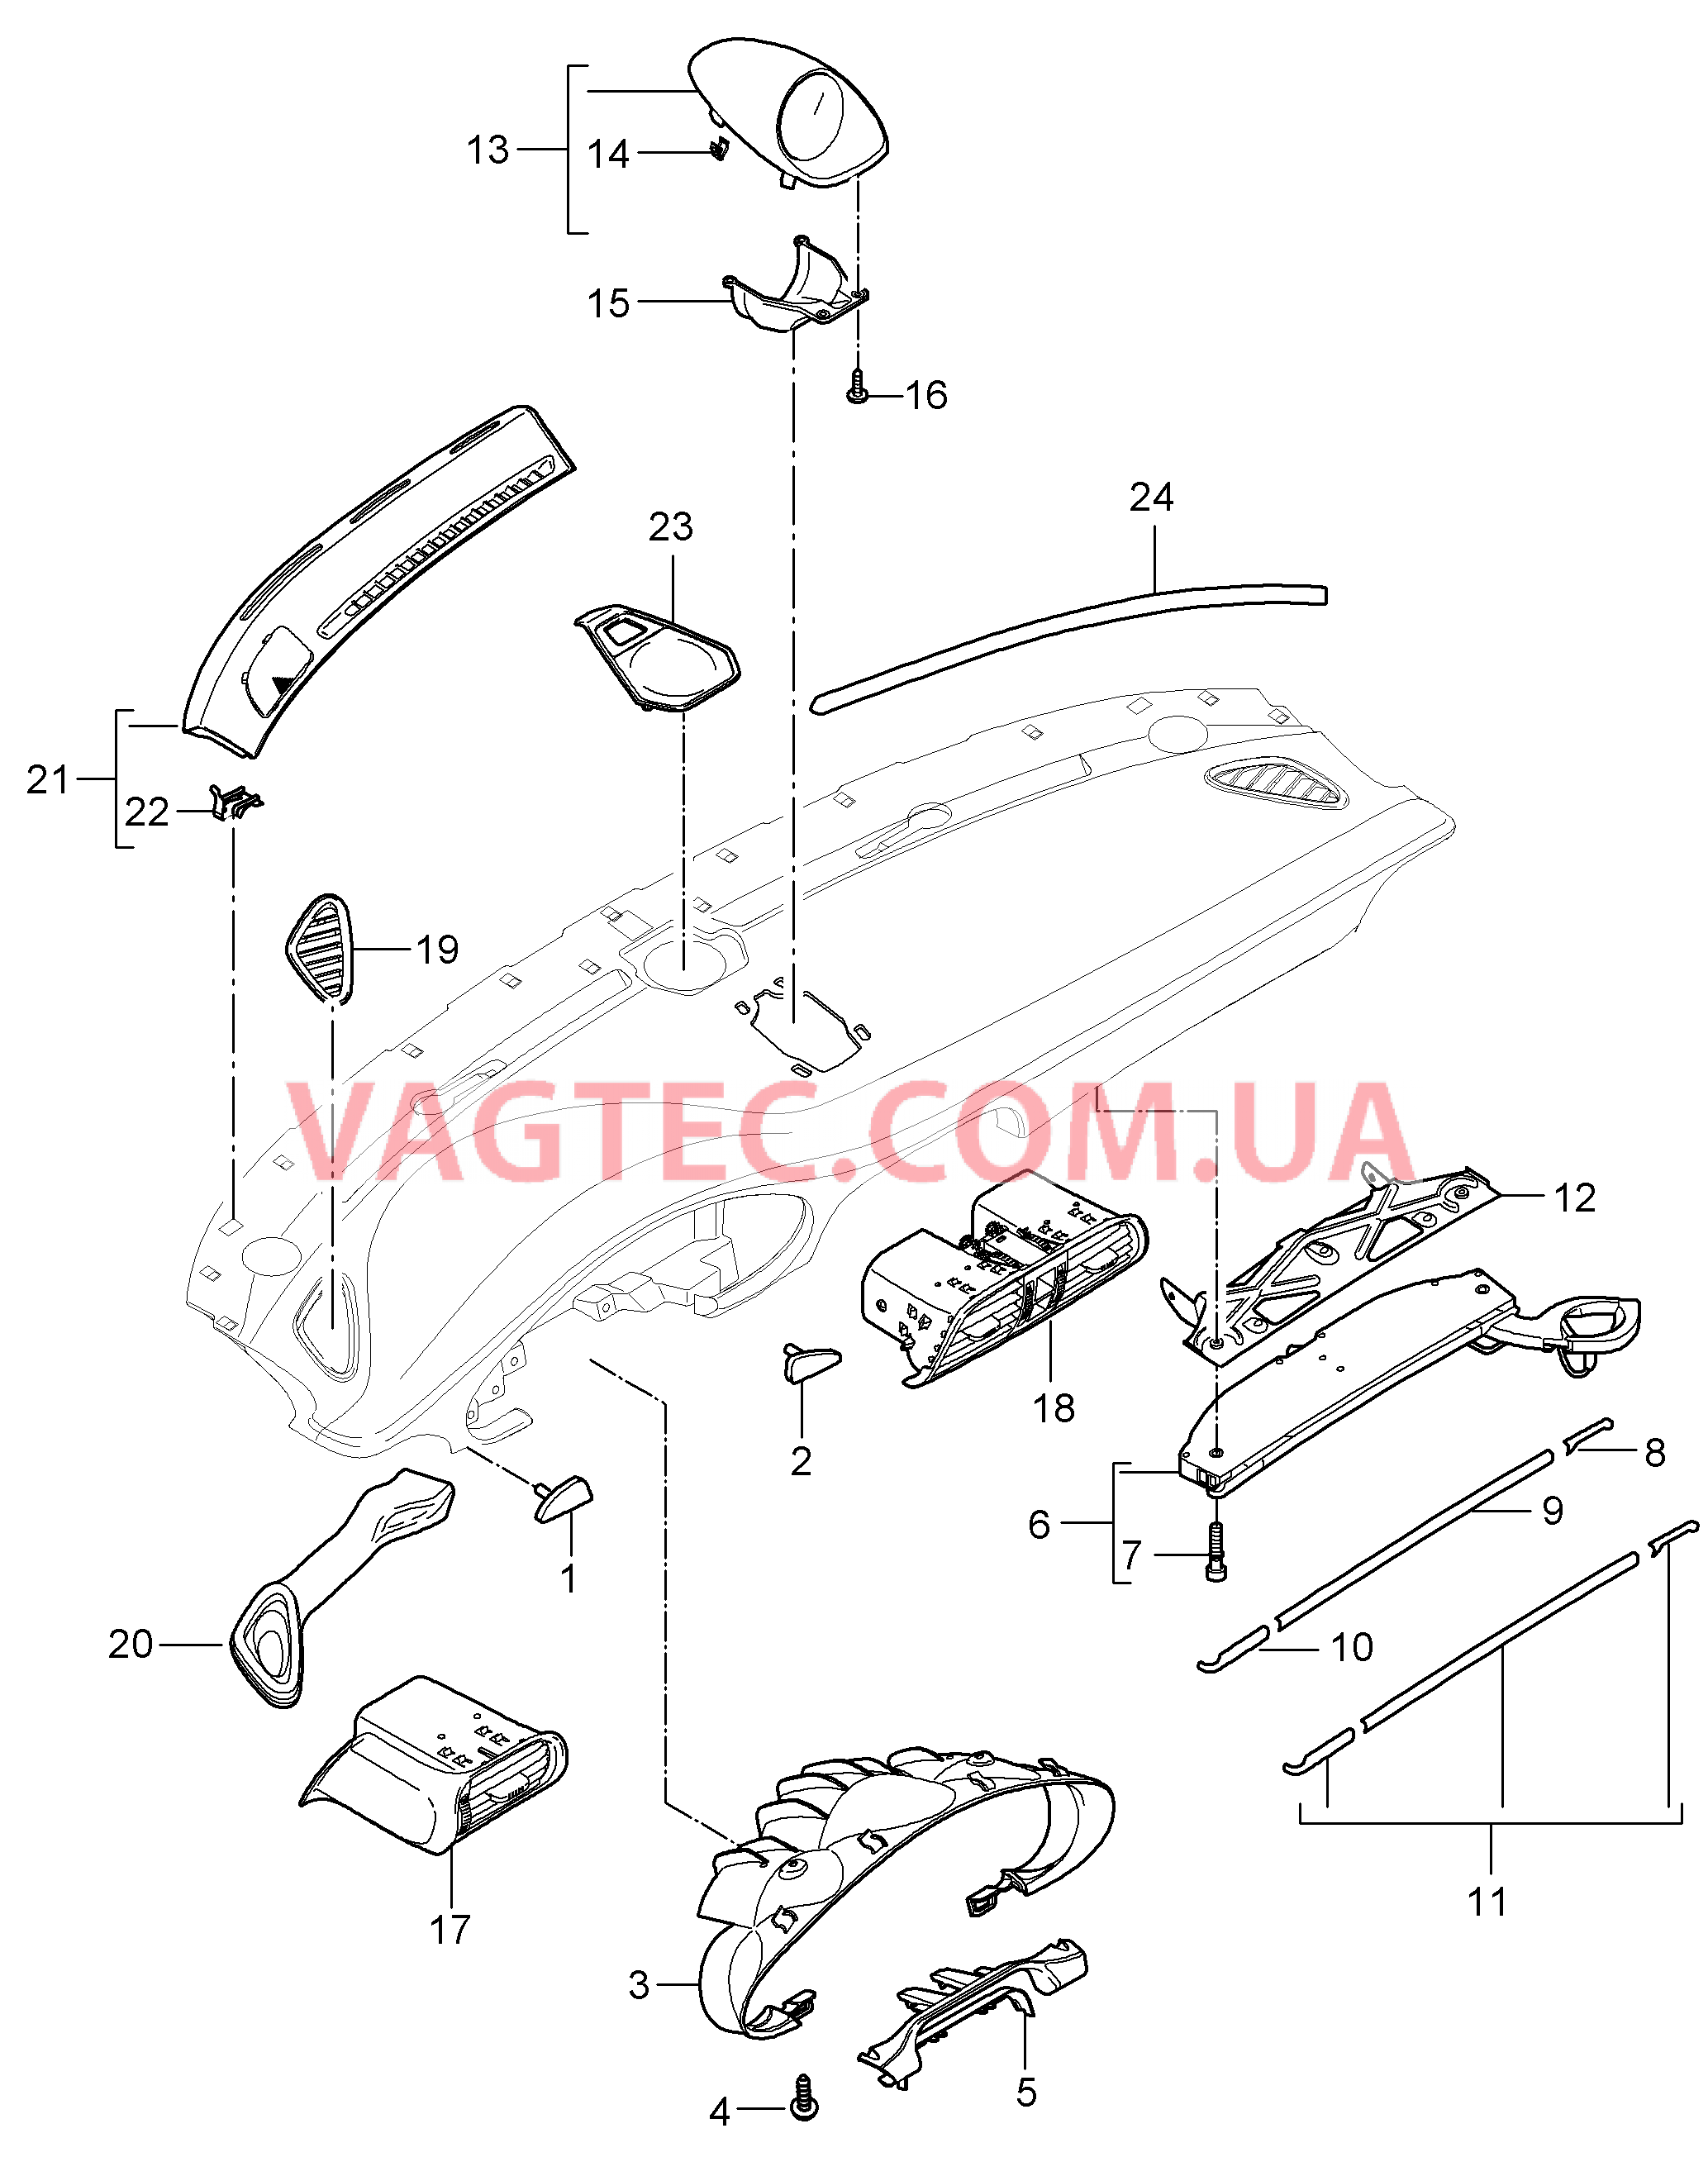 809-001 Детали, Облицовка передней панели, Верхняя часть для PORSCHE 911.Carrera 2005-2008USA